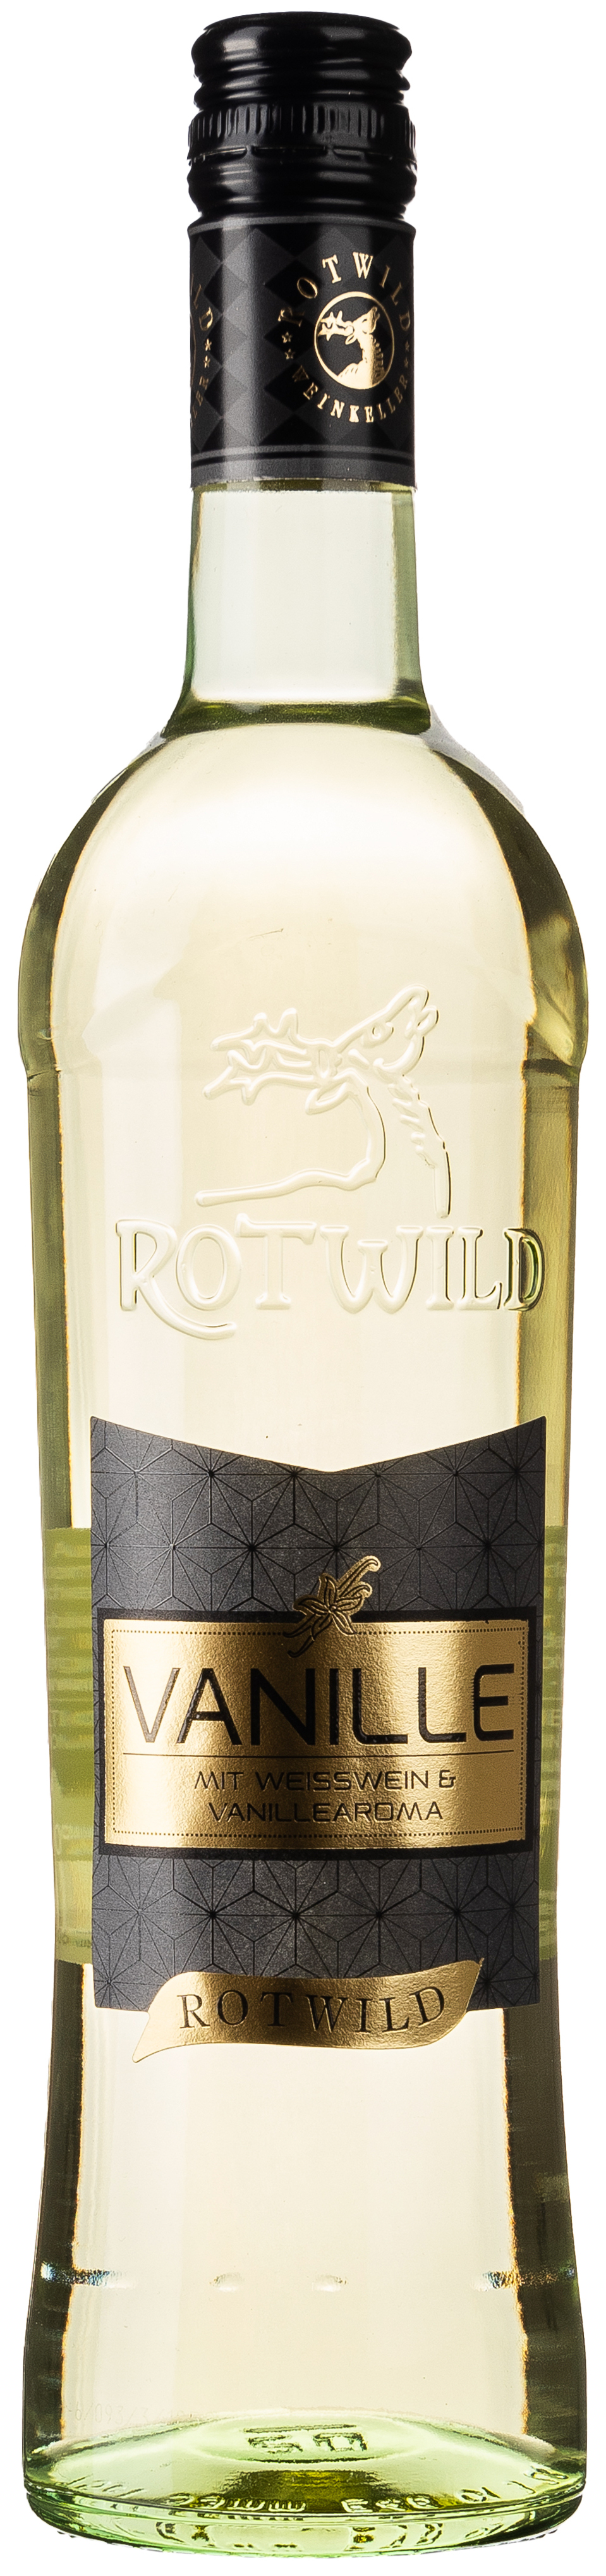 Rotwild Vanille 10% vol. 0,75L